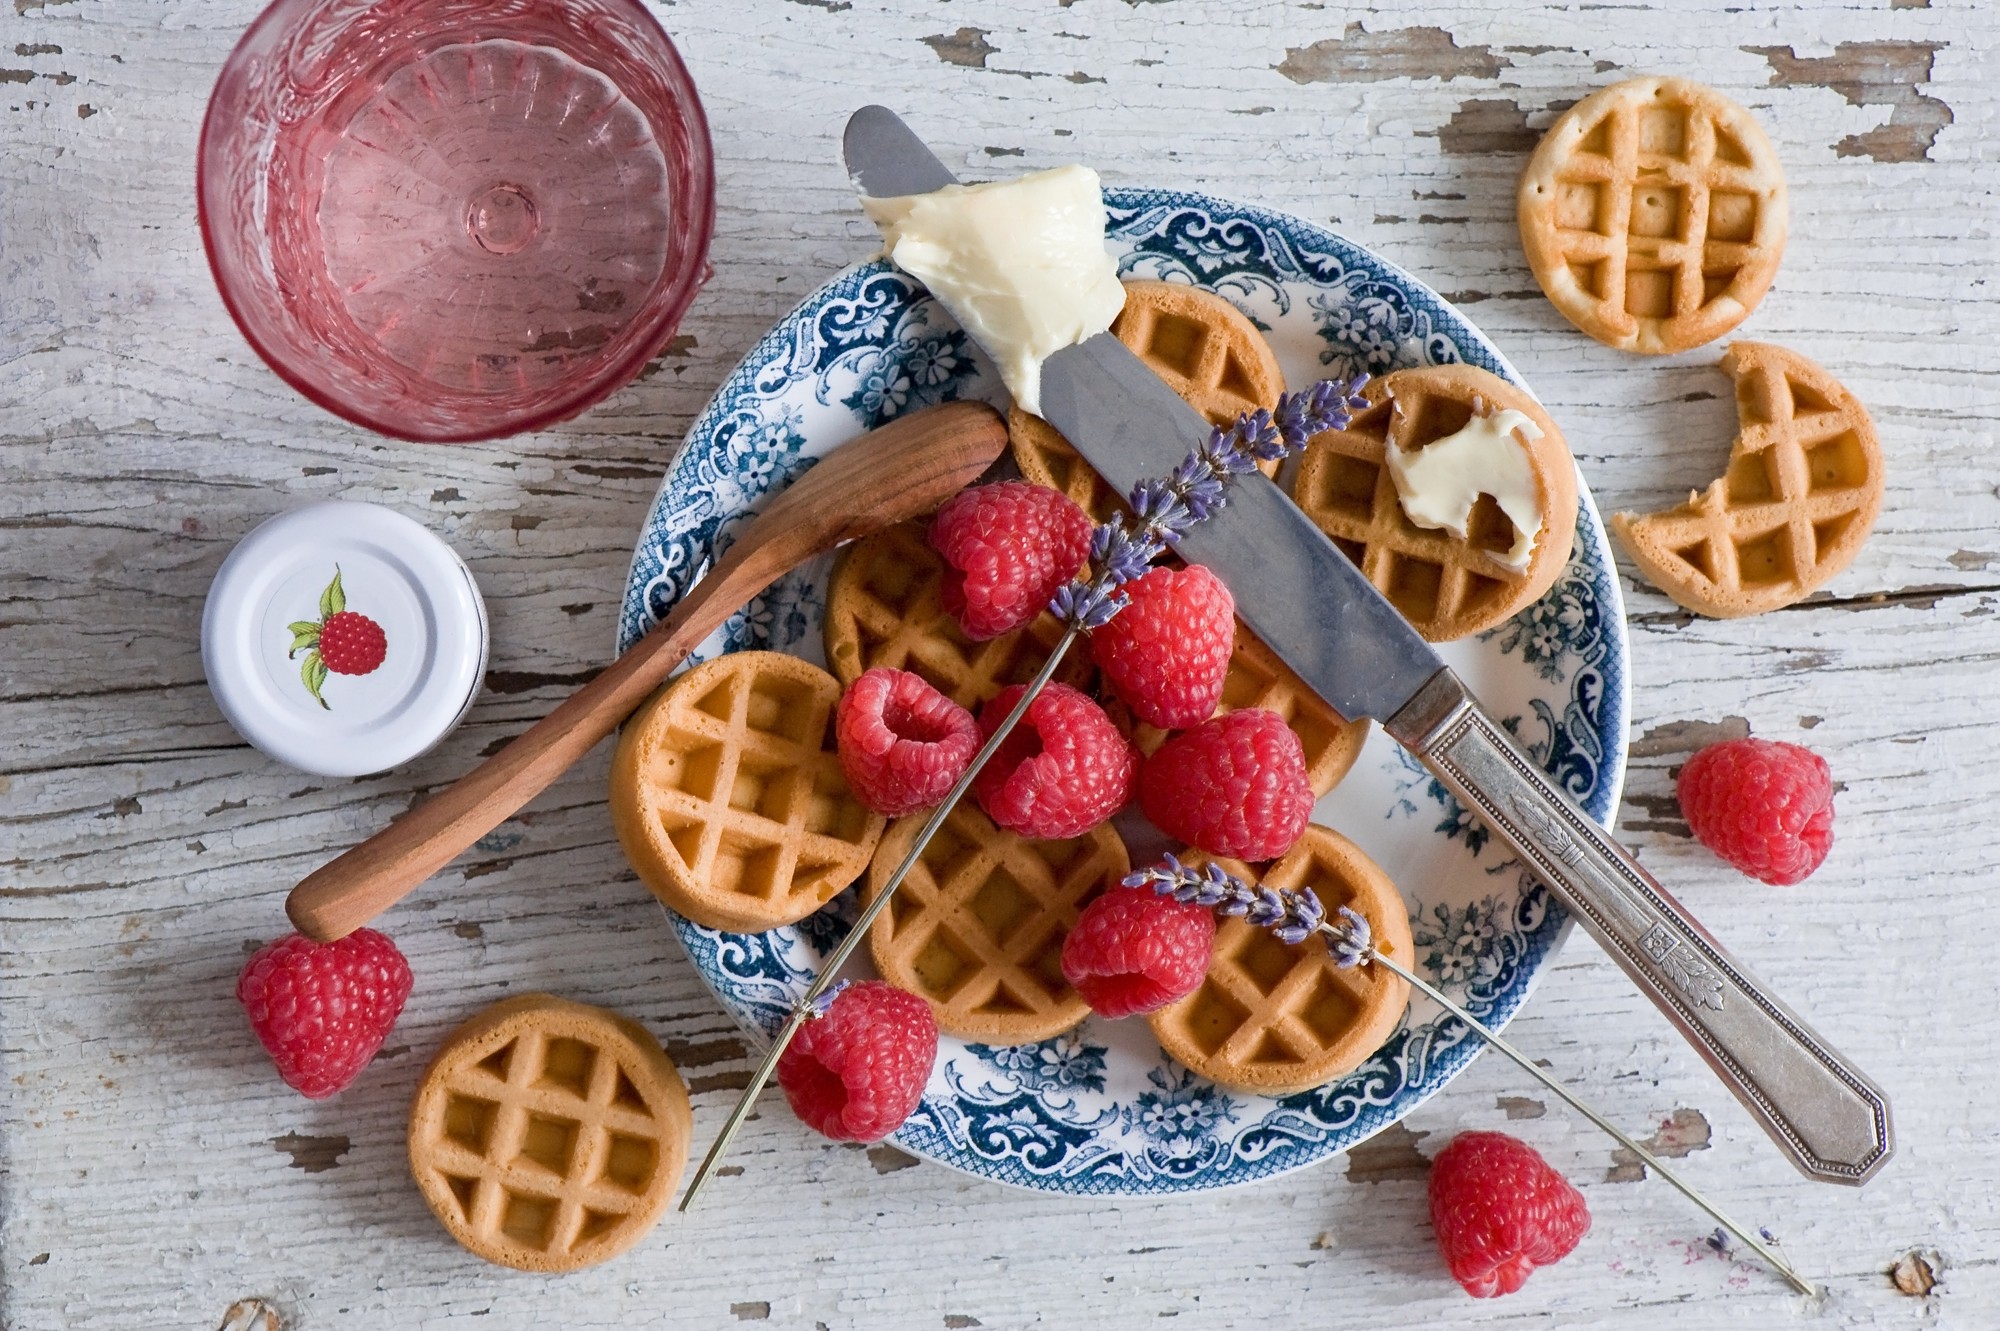 General 2000x1331 breakfast waffles raspberries butter food sweets knife spoon berries